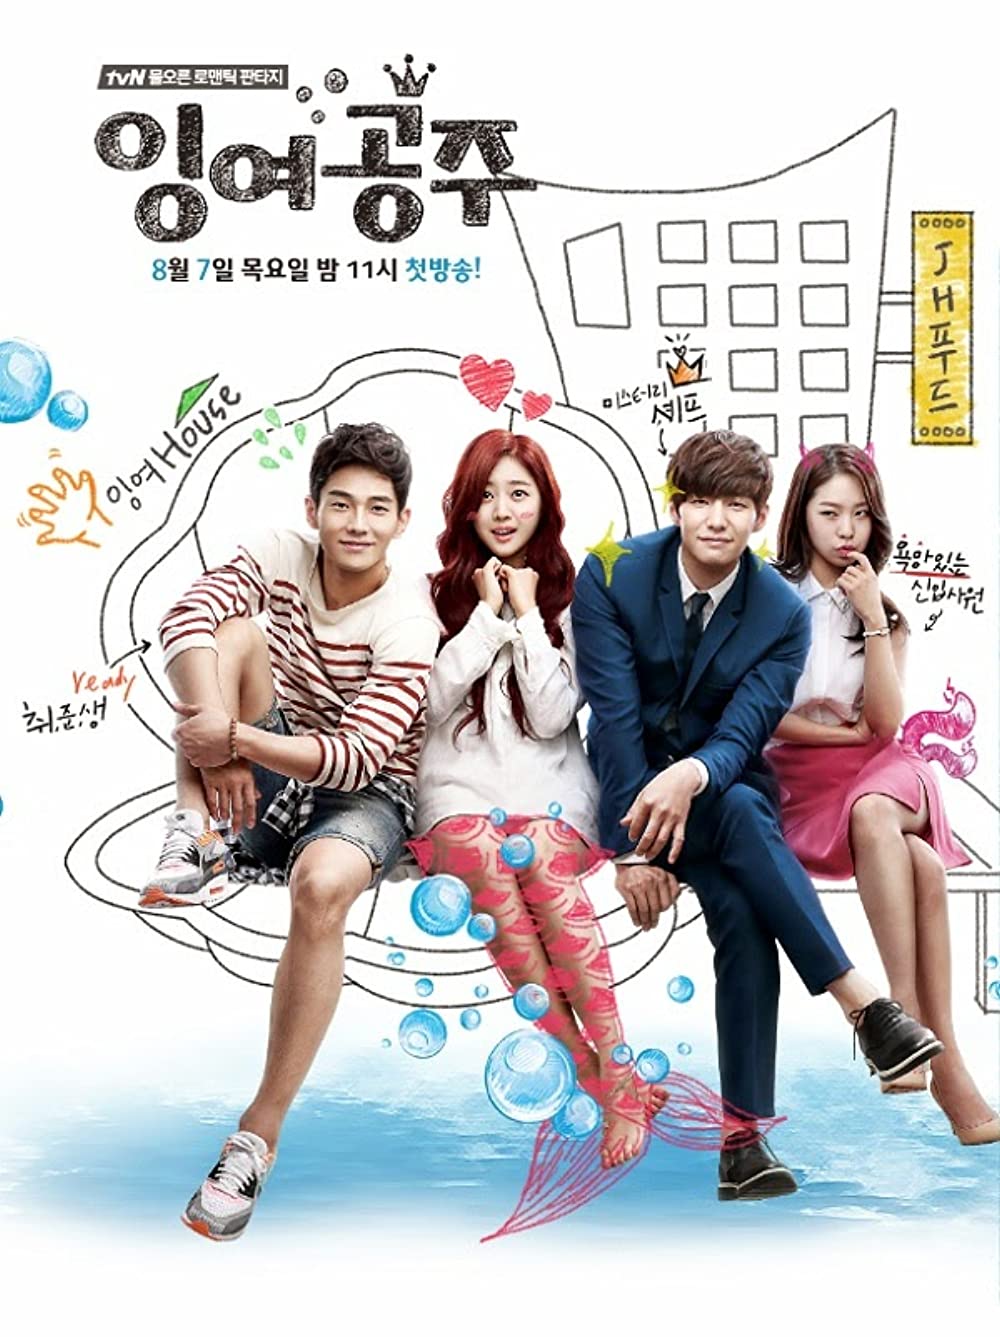 11 Rekomendasi drama Korea Nam Joo-hyuk, Twenty-Five Twenty-One seru